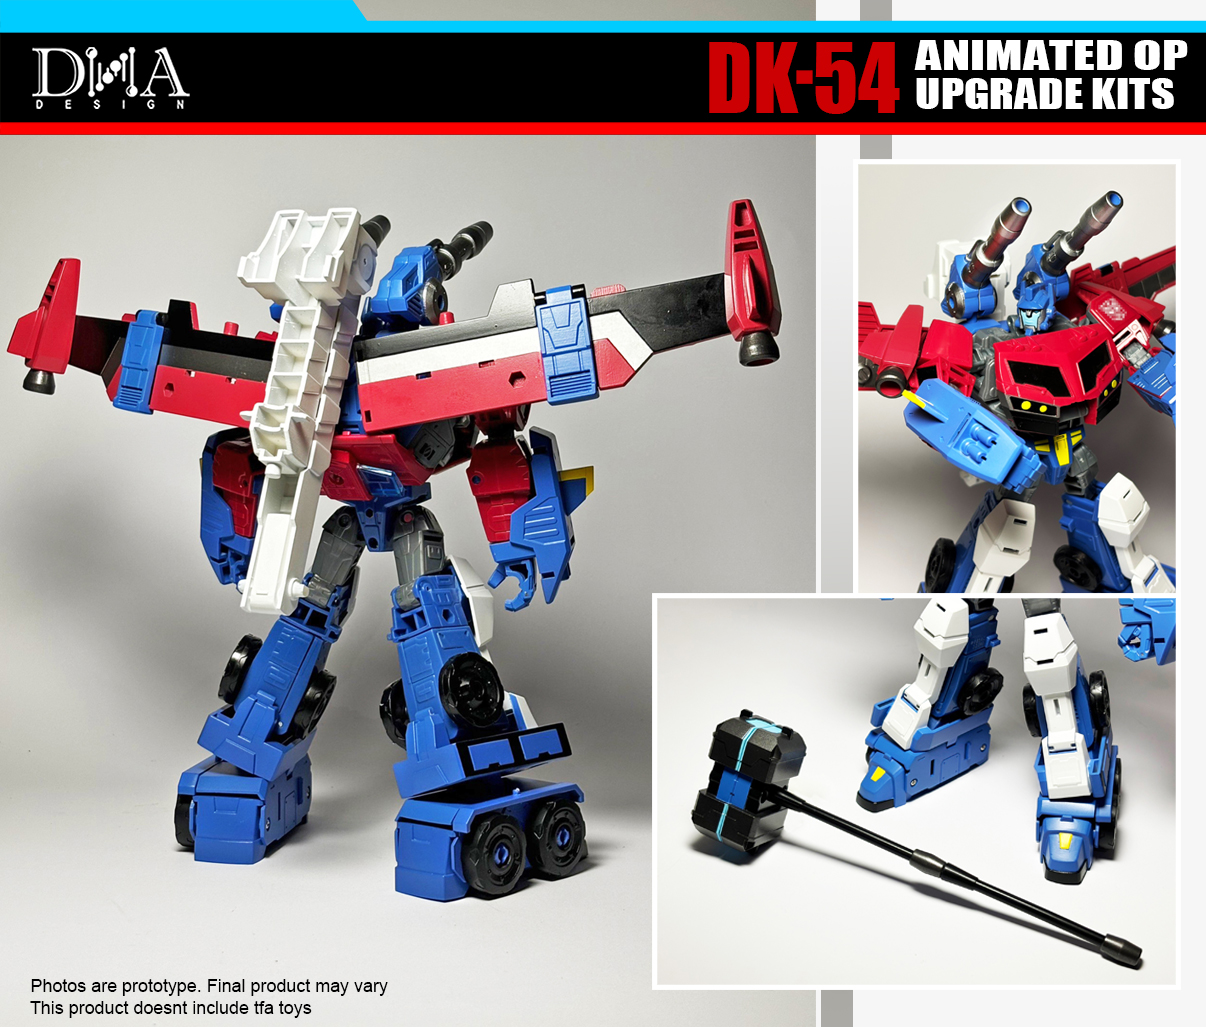 Dna Design Dk 54 Animated Op Upgrade Kits 11